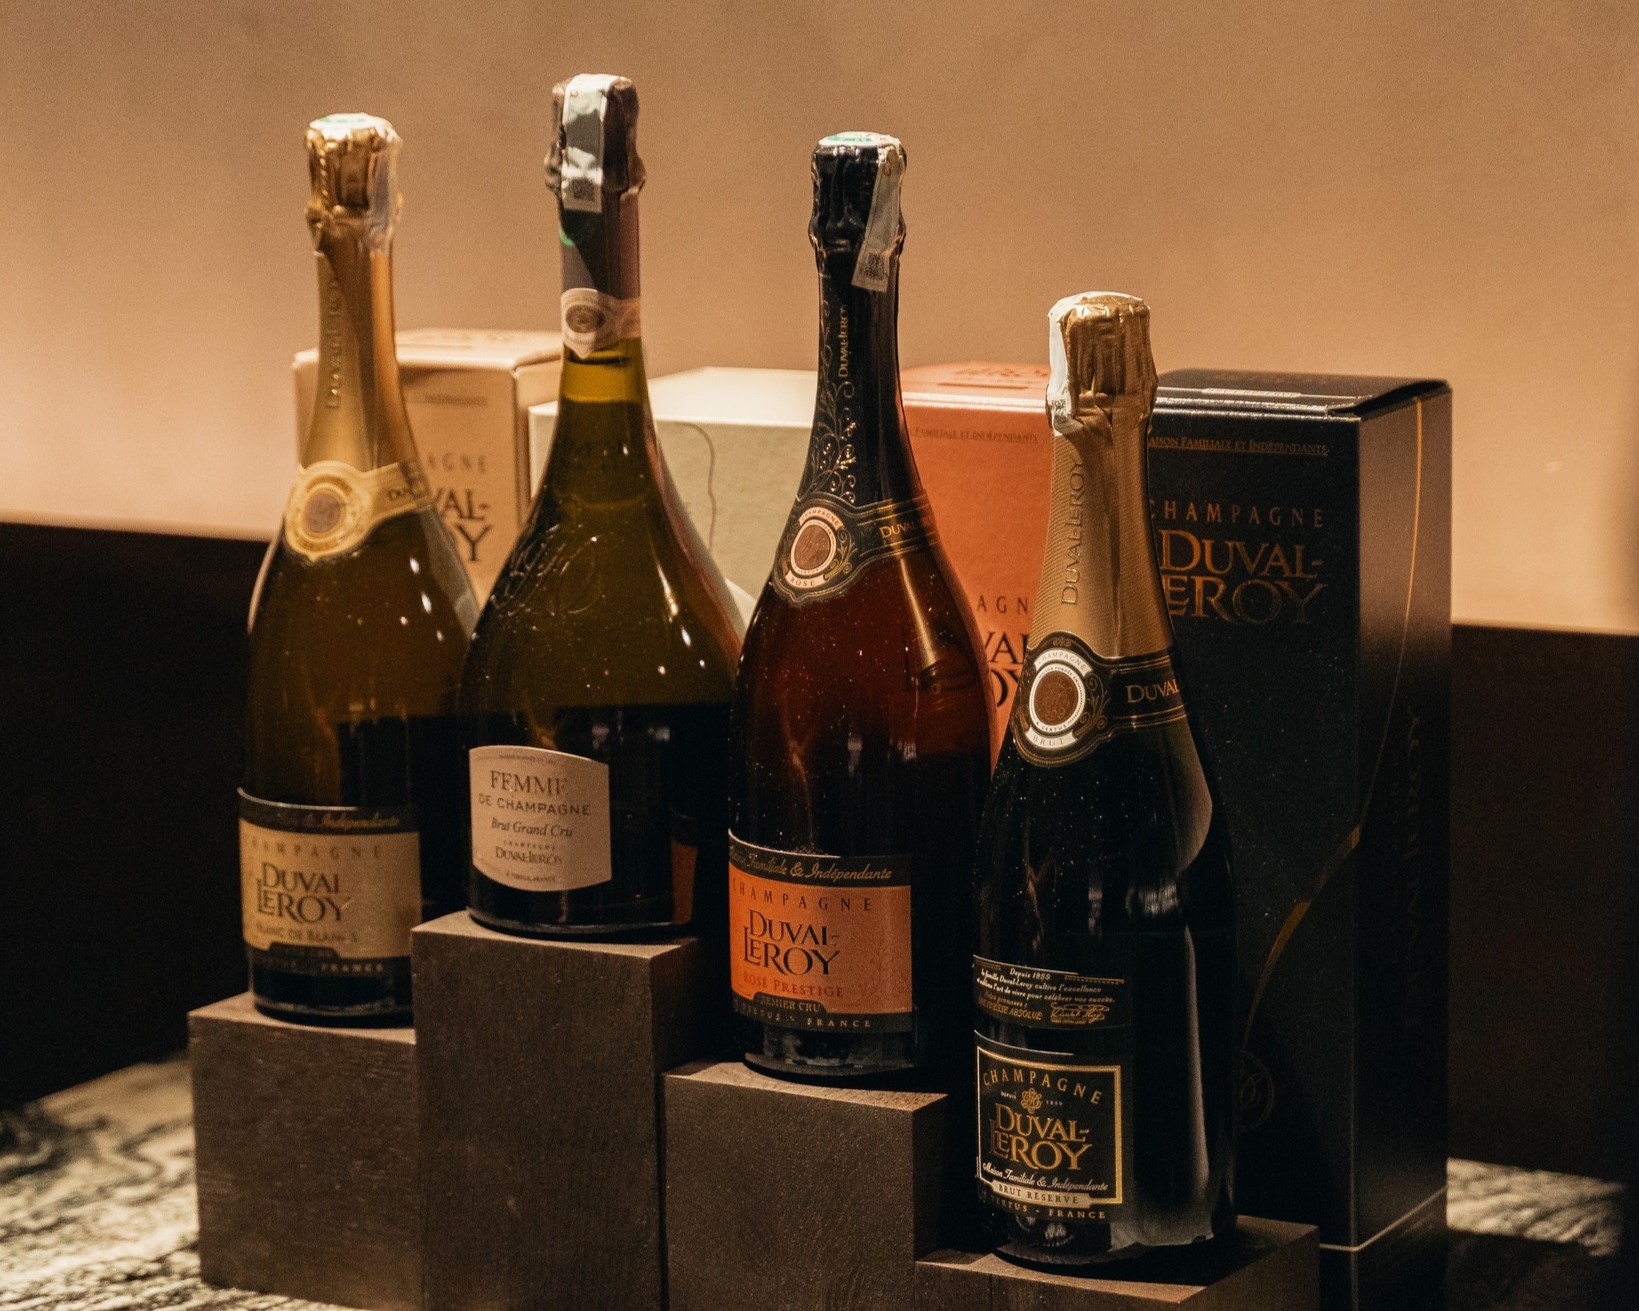 Champagne Duval-Leroy phân phối độc quyền bởi Thiên Linh WIne